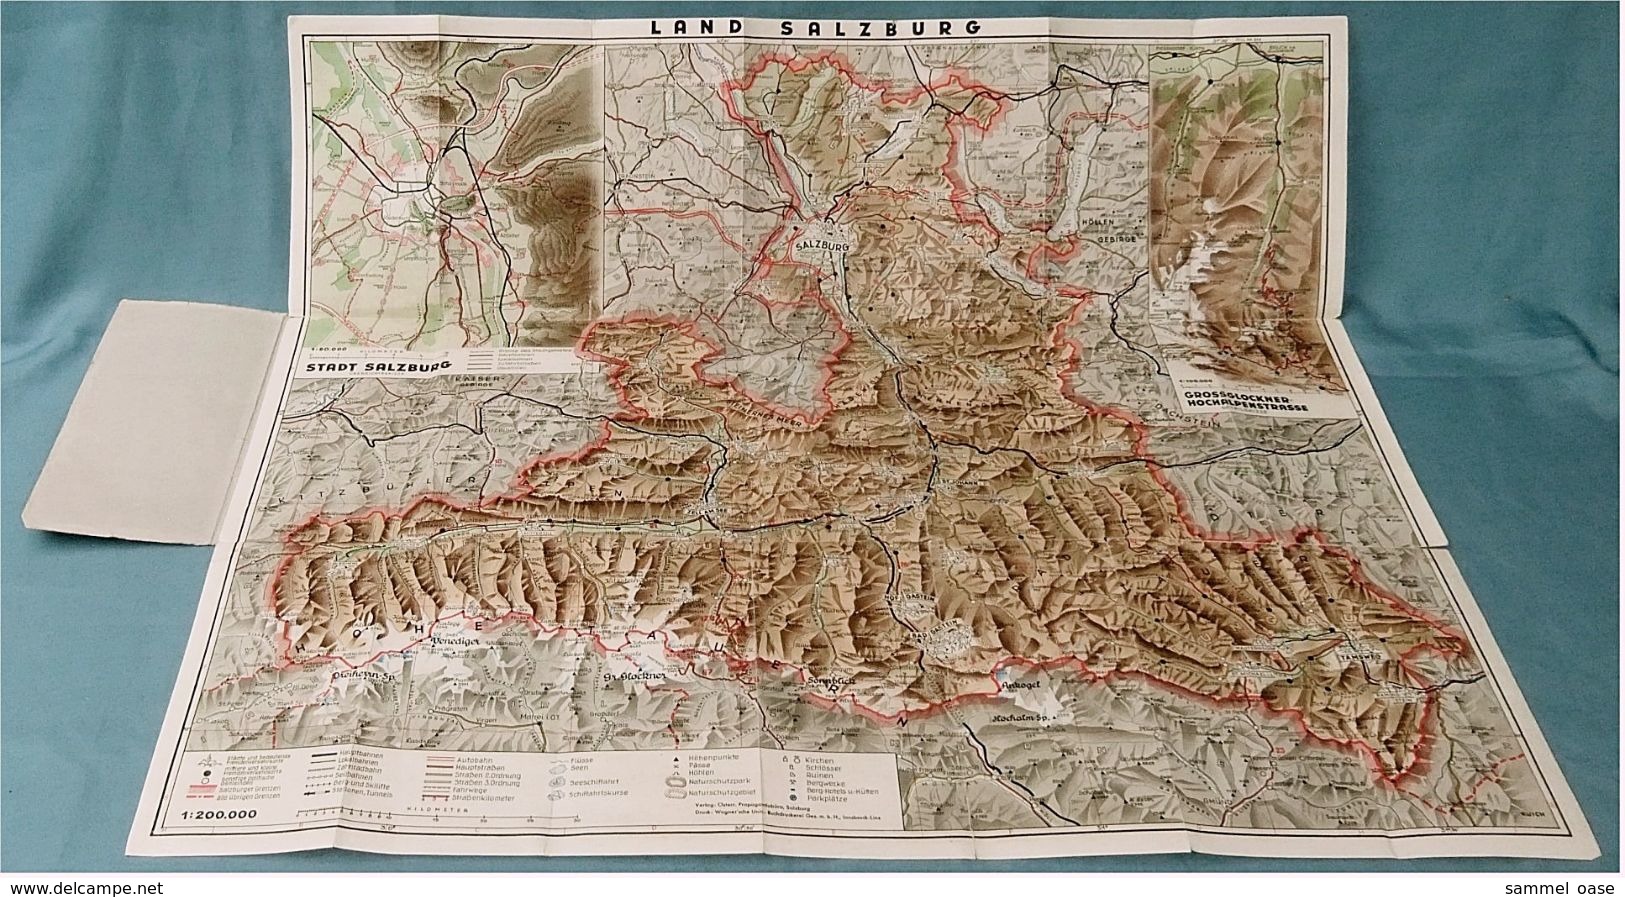 Reliefkarte Salzburger Land - Mit Sonderkarte Großglocknerstrasse / Salzburg - 79 X 68 Cm - Ca.1935 - Maßstab 1:200.000 - Mappemondes